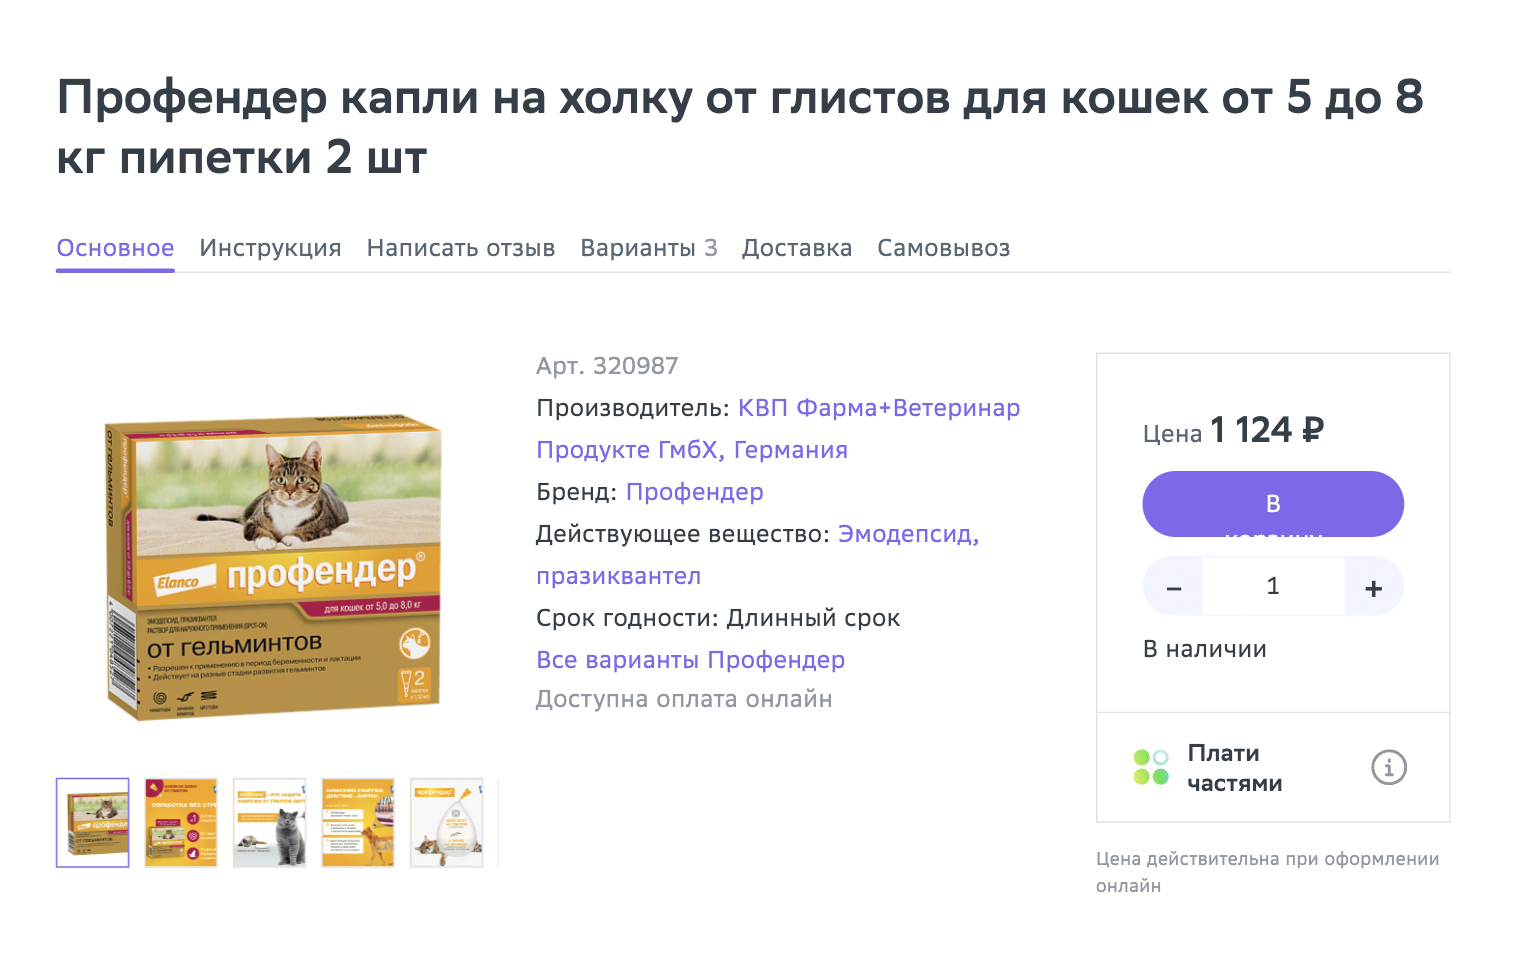 Если кошке сложно дать таблетку, можно использовать капли на холку. Источник: eapteka.ru